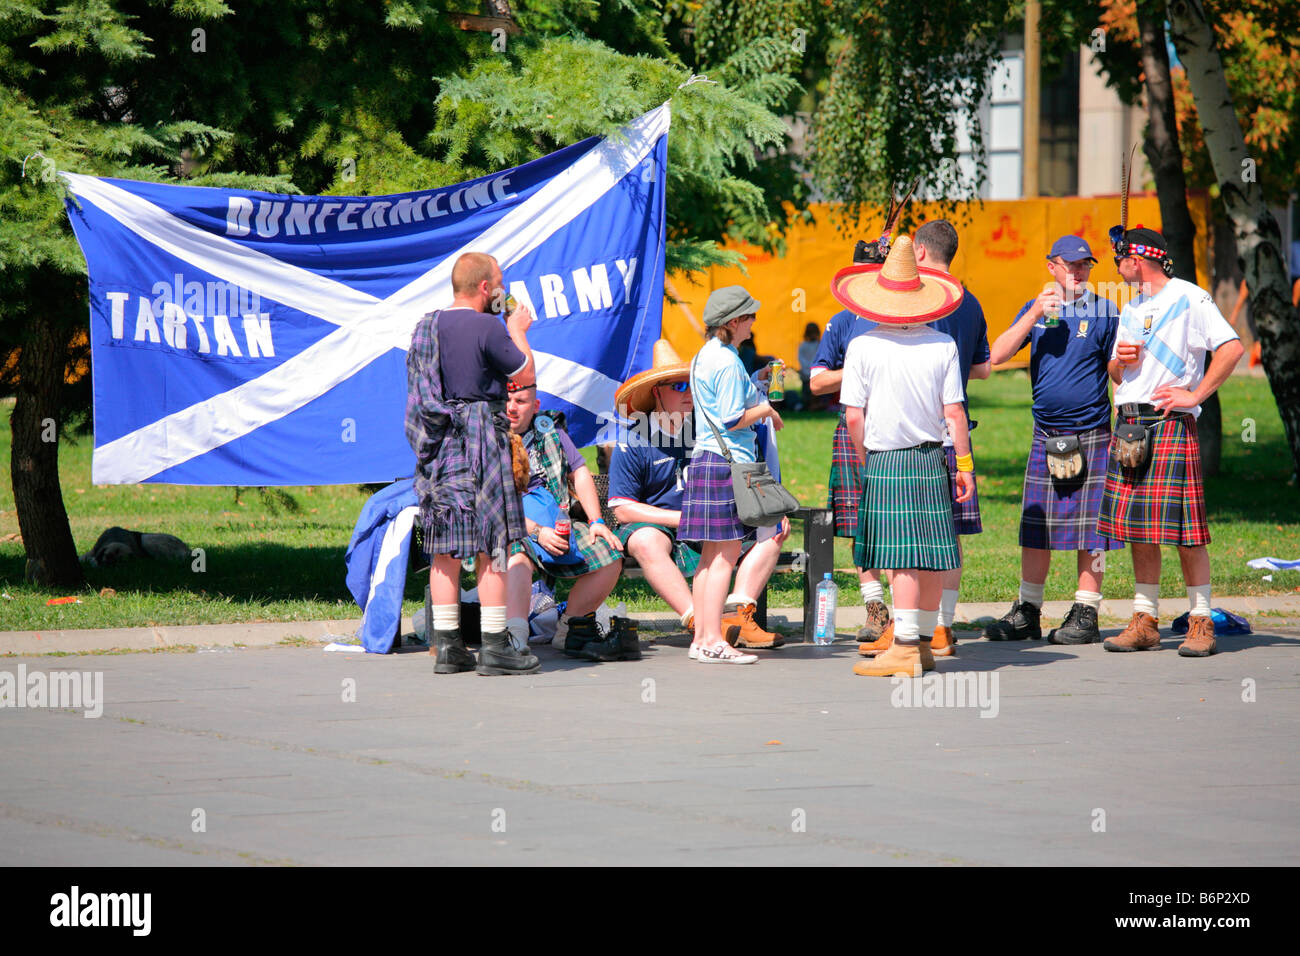 Los aficionados al fútbol escocés en Skopje, Macedonia en el juego Foto de stock